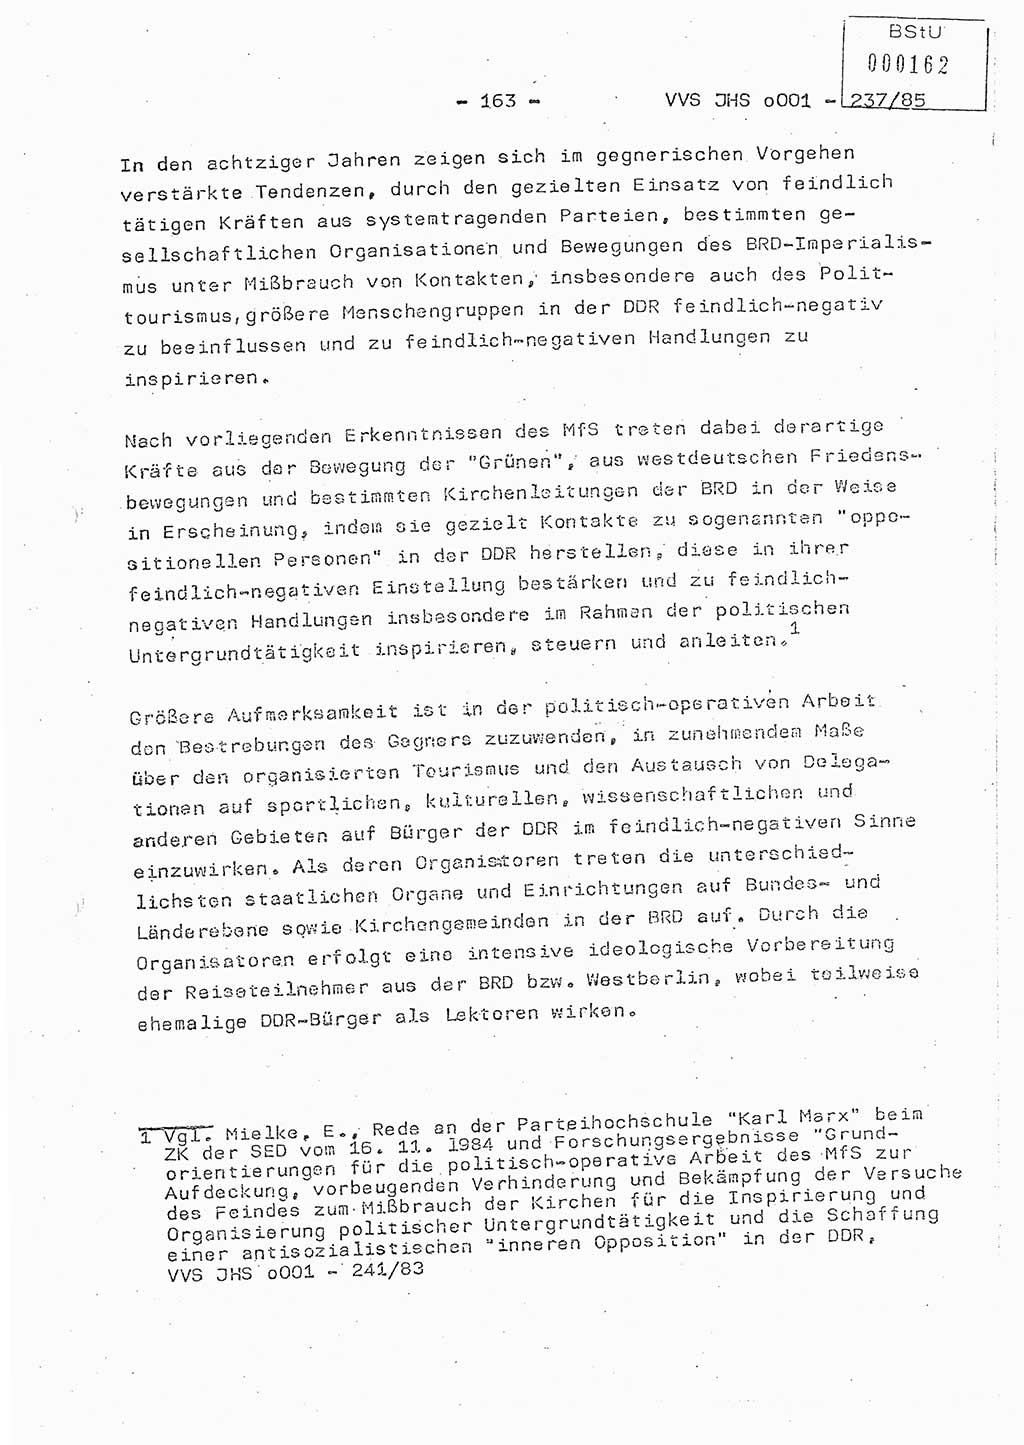 Dissertation Oberstleutnant Peter Jakulski (JHS), Oberstleutnat Christian Rudolph (HA Ⅸ), Major Horst Böttger (ZMD), Major Wolfgang Grüneberg (JHS), Major Albert Meutsch (JHS), Ministerium für Staatssicherheit (MfS) [Deutsche Demokratische Republik (DDR)], Juristische Hochschule (JHS), Vertrauliche Verschlußsache (VVS) o001-237/85, Potsdam 1985, Seite 163 (Diss. MfS DDR JHS VVS o001-237/85 1985, S. 163)